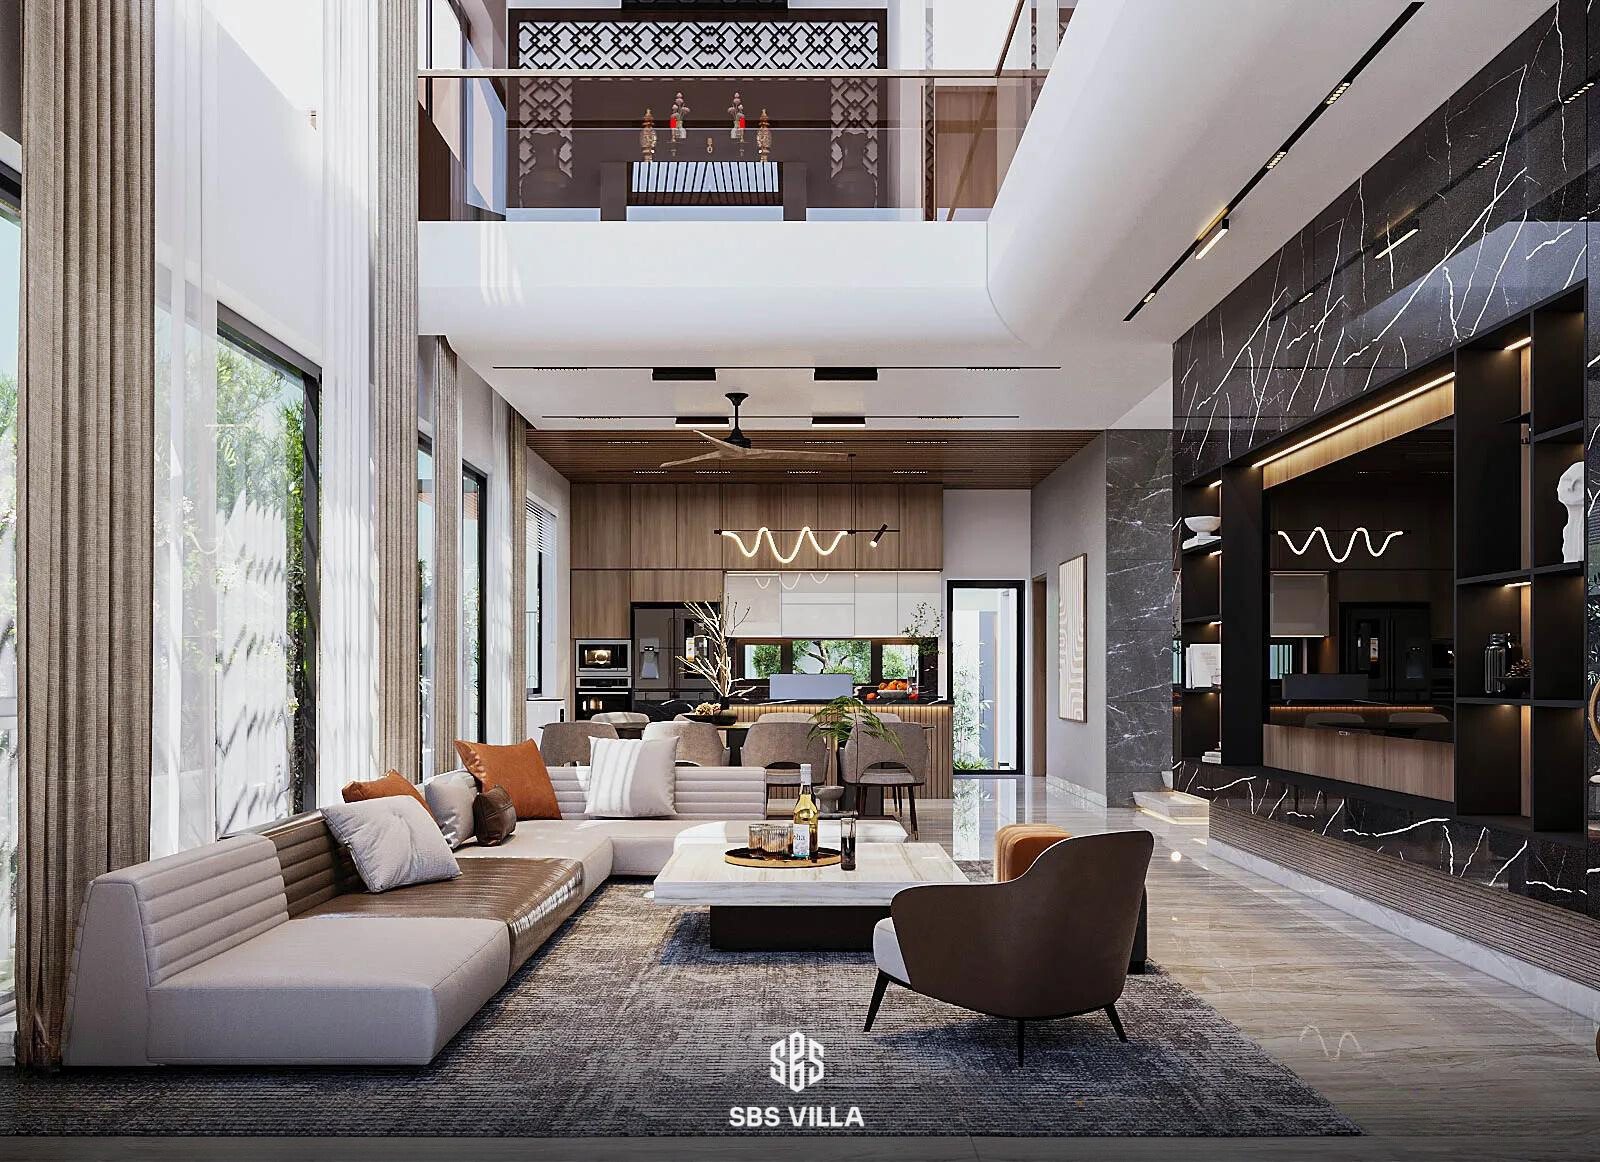 Nội thất của D's Villa áp dụng lối kiến trúc mở, thông tầng, tạo cảm giác rộng rãi, bề thế